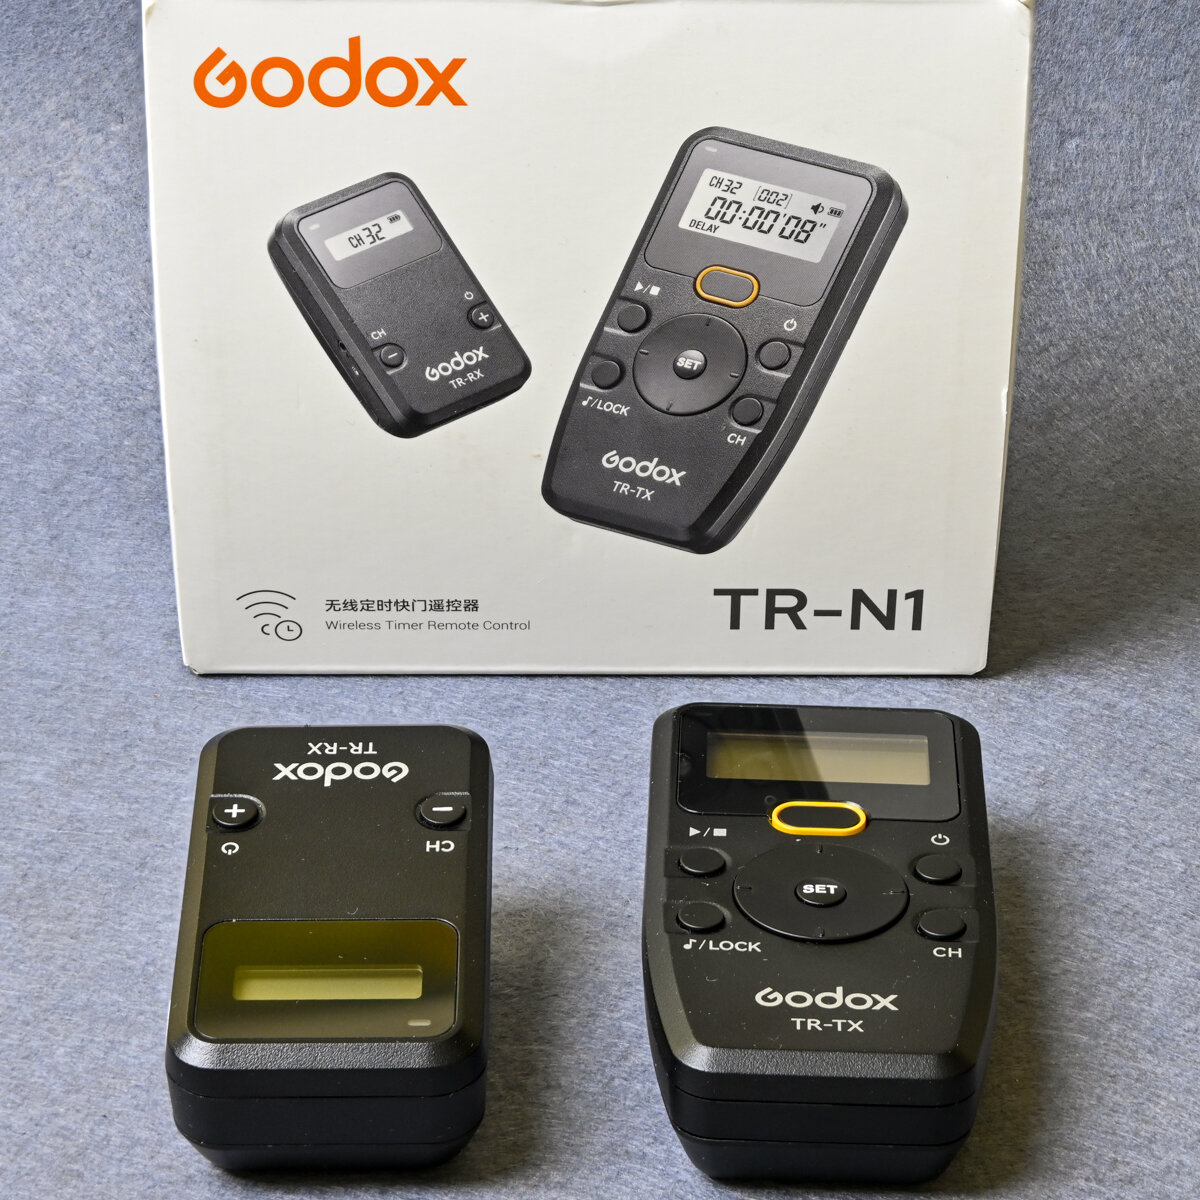 Maggiori informazioni su "Godox TR series: wireless remote control"